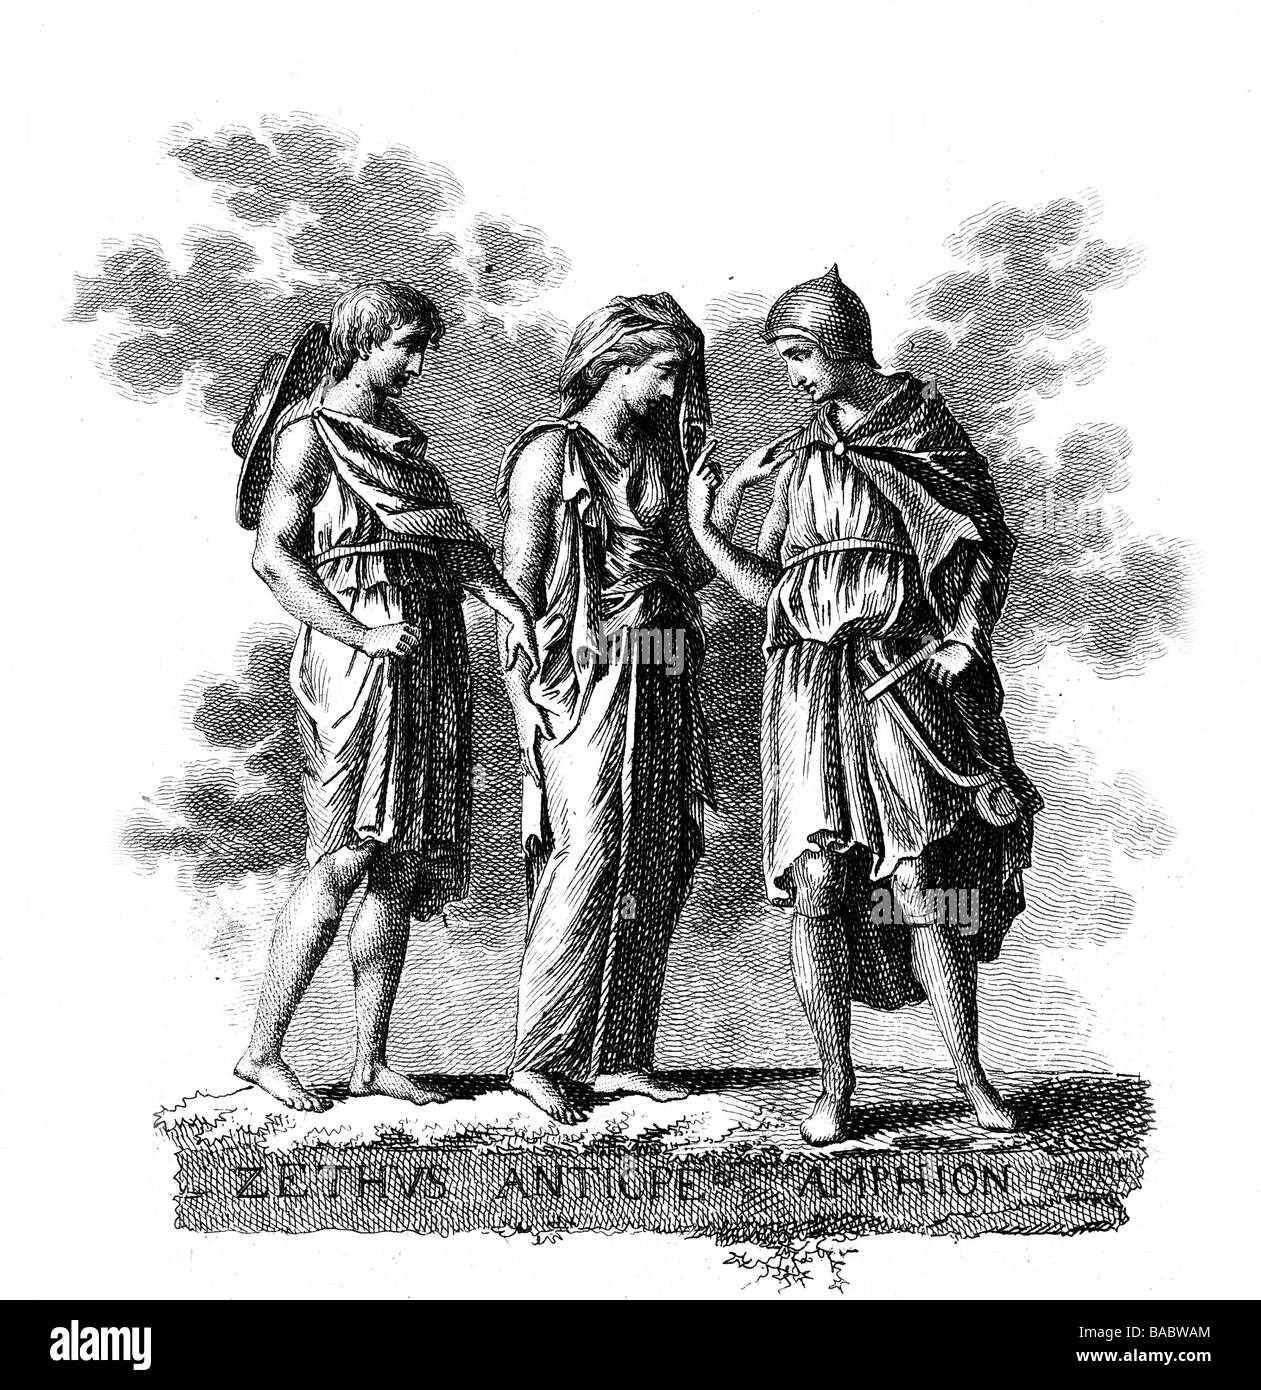 Antiope (fille de Nycteus), Grec mytholigic la figure, avec ses fils et Zethus Amphion, gravure sur cuivre, 18e siècle, l'artiste n'a pas d'auteur pour être effacé Banque D'Images